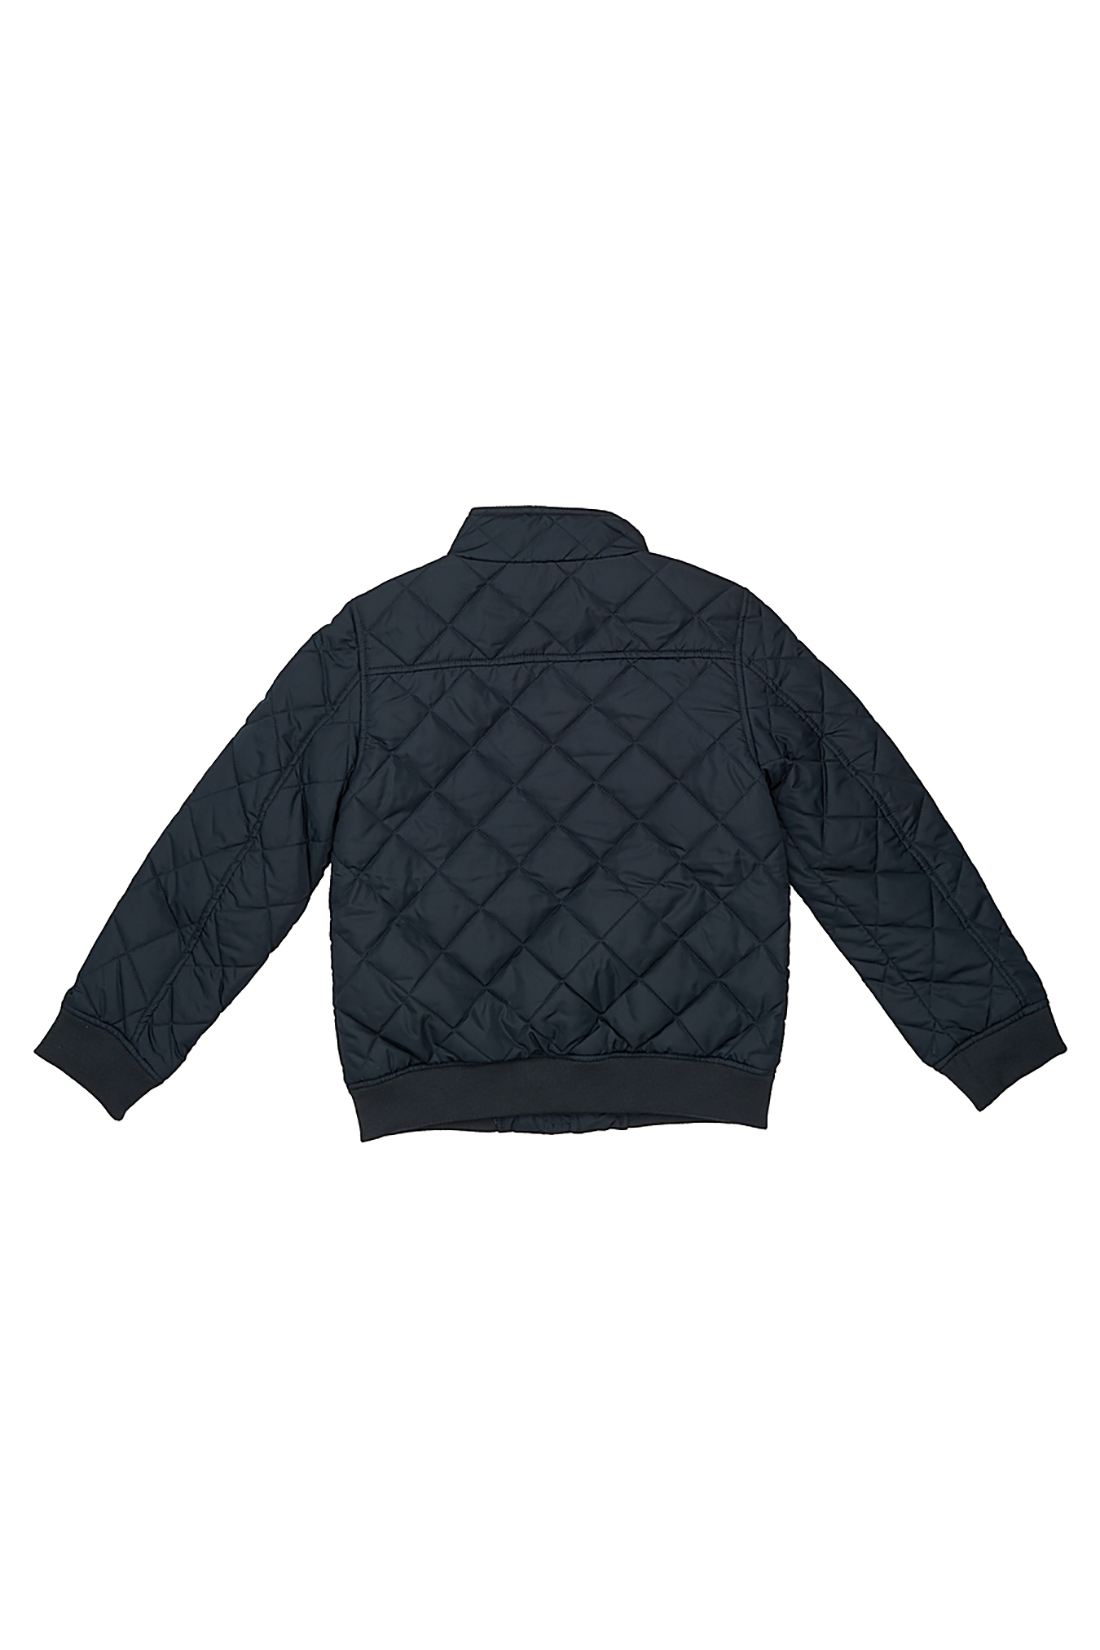 Куртка для мальчика (арт. baon BJ538005), размер 134-140, цвет синий Куртка для мальчика (арт. baon BJ538005) - фото 3